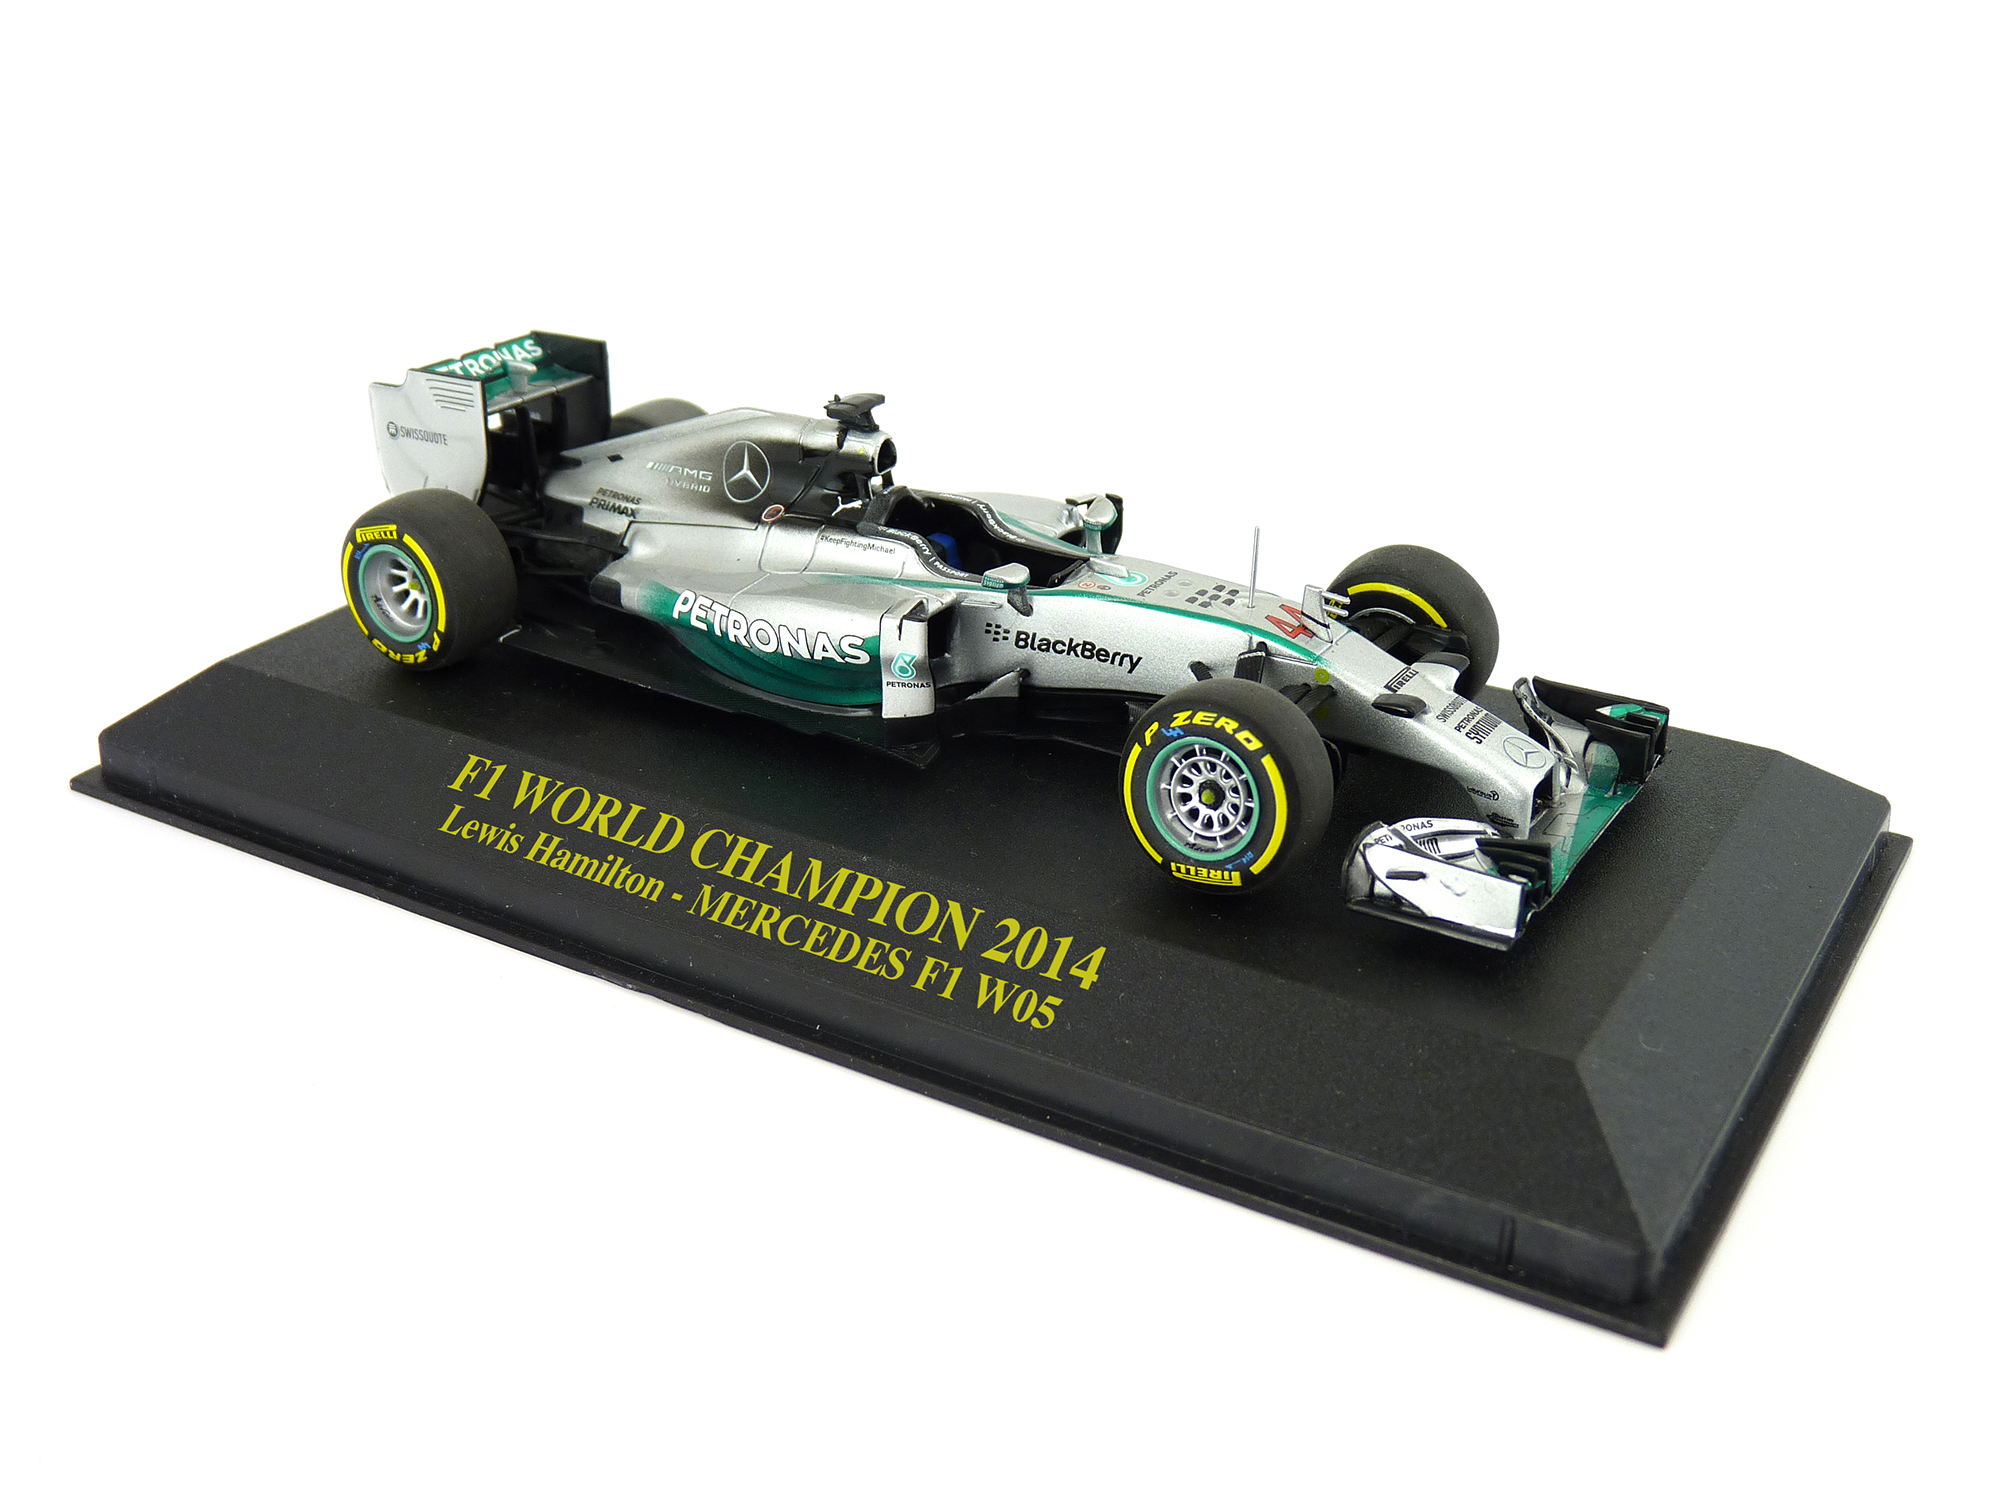 2014 - Lewis Hamilton